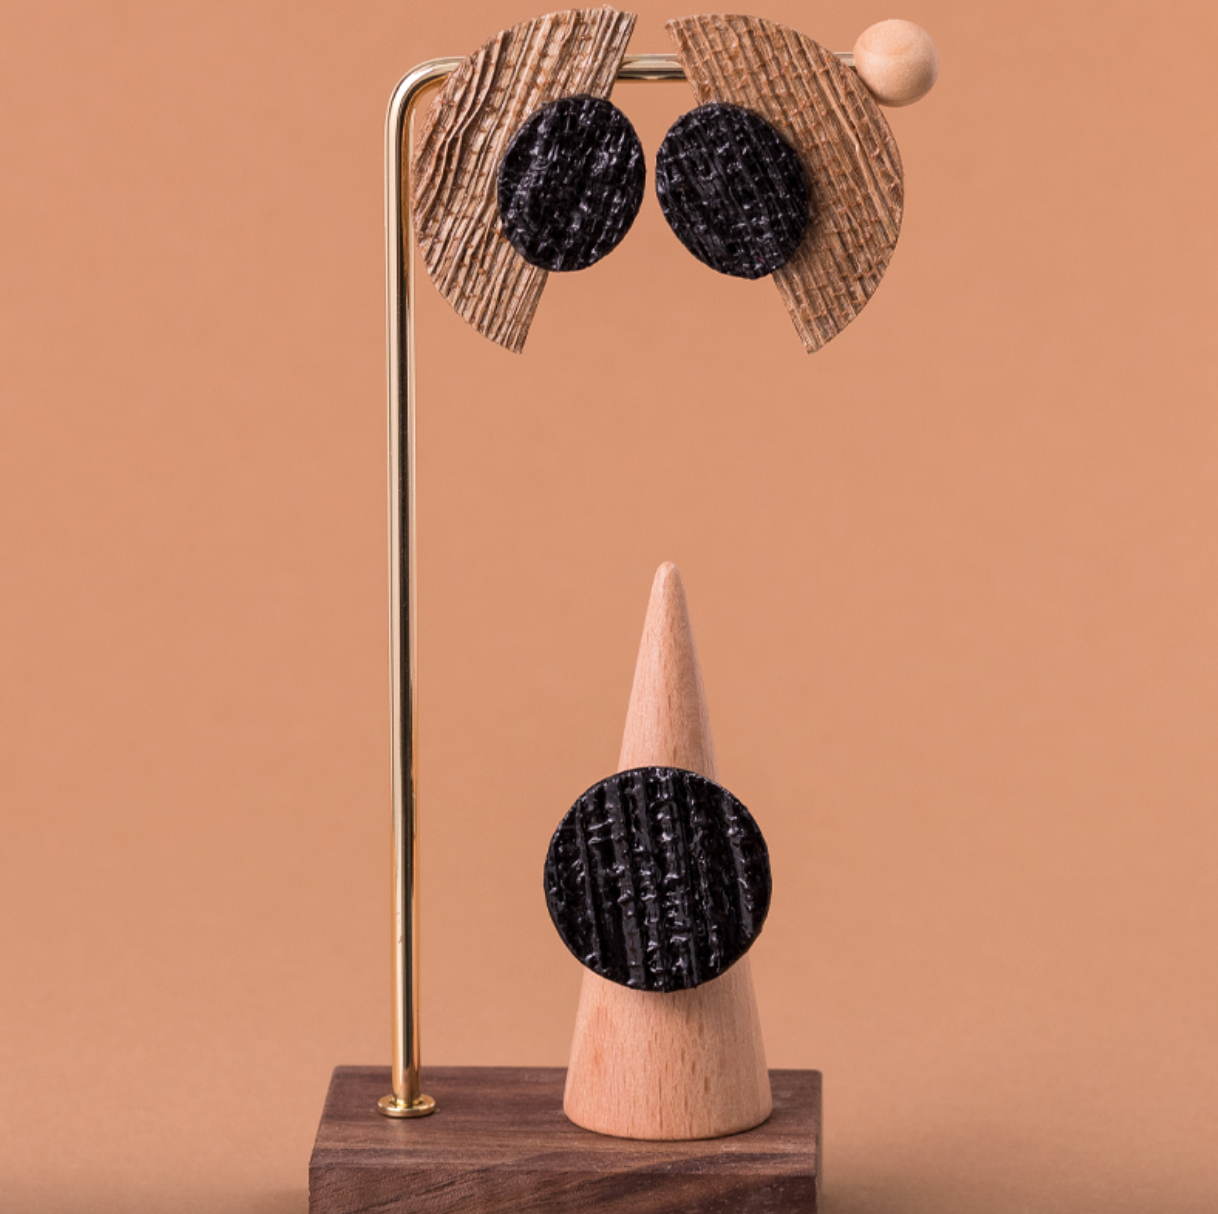 Brincos meia-lua pretos: brincos elegantes e marcantes feitos de fibra de banana